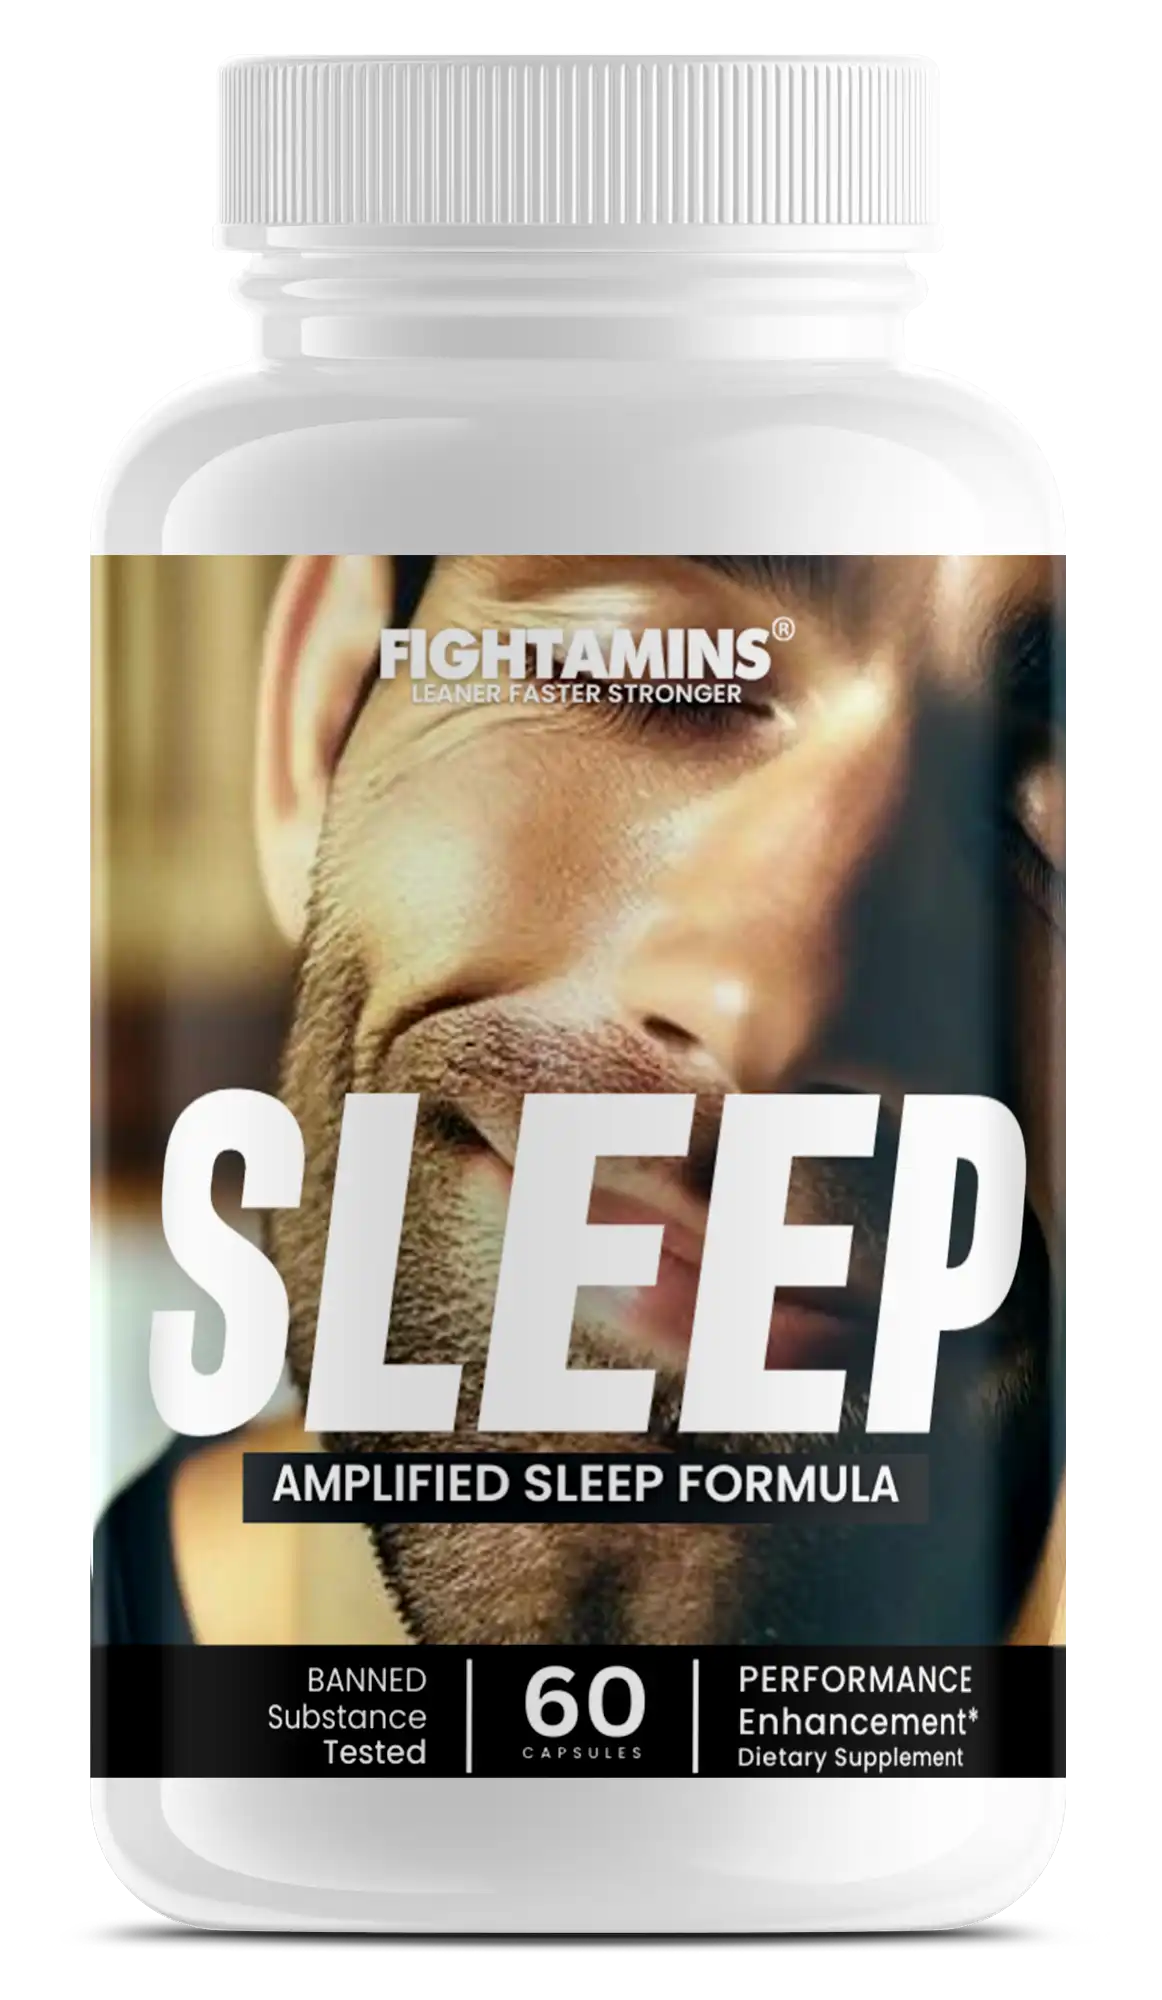 SLEEP - Amplified Sleep Formula